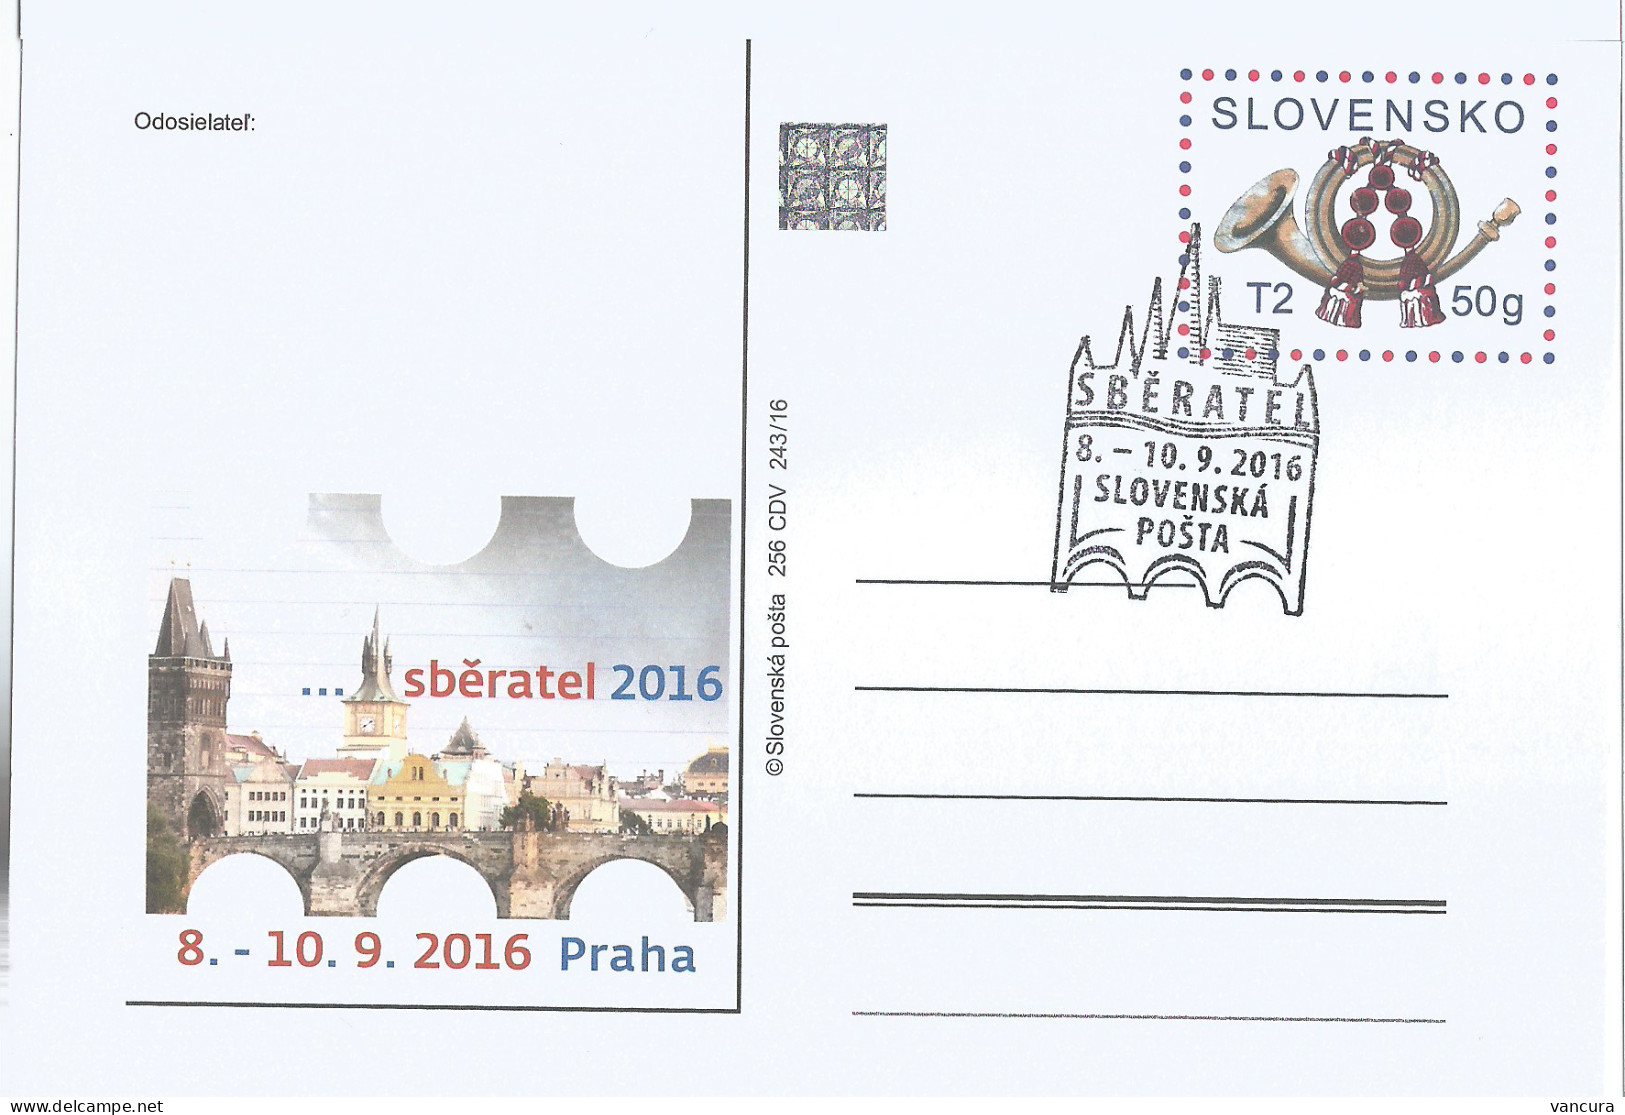 CDV 256 Slovakia Sberatel Fair Prague 2016 Charles Bridge - Bridges